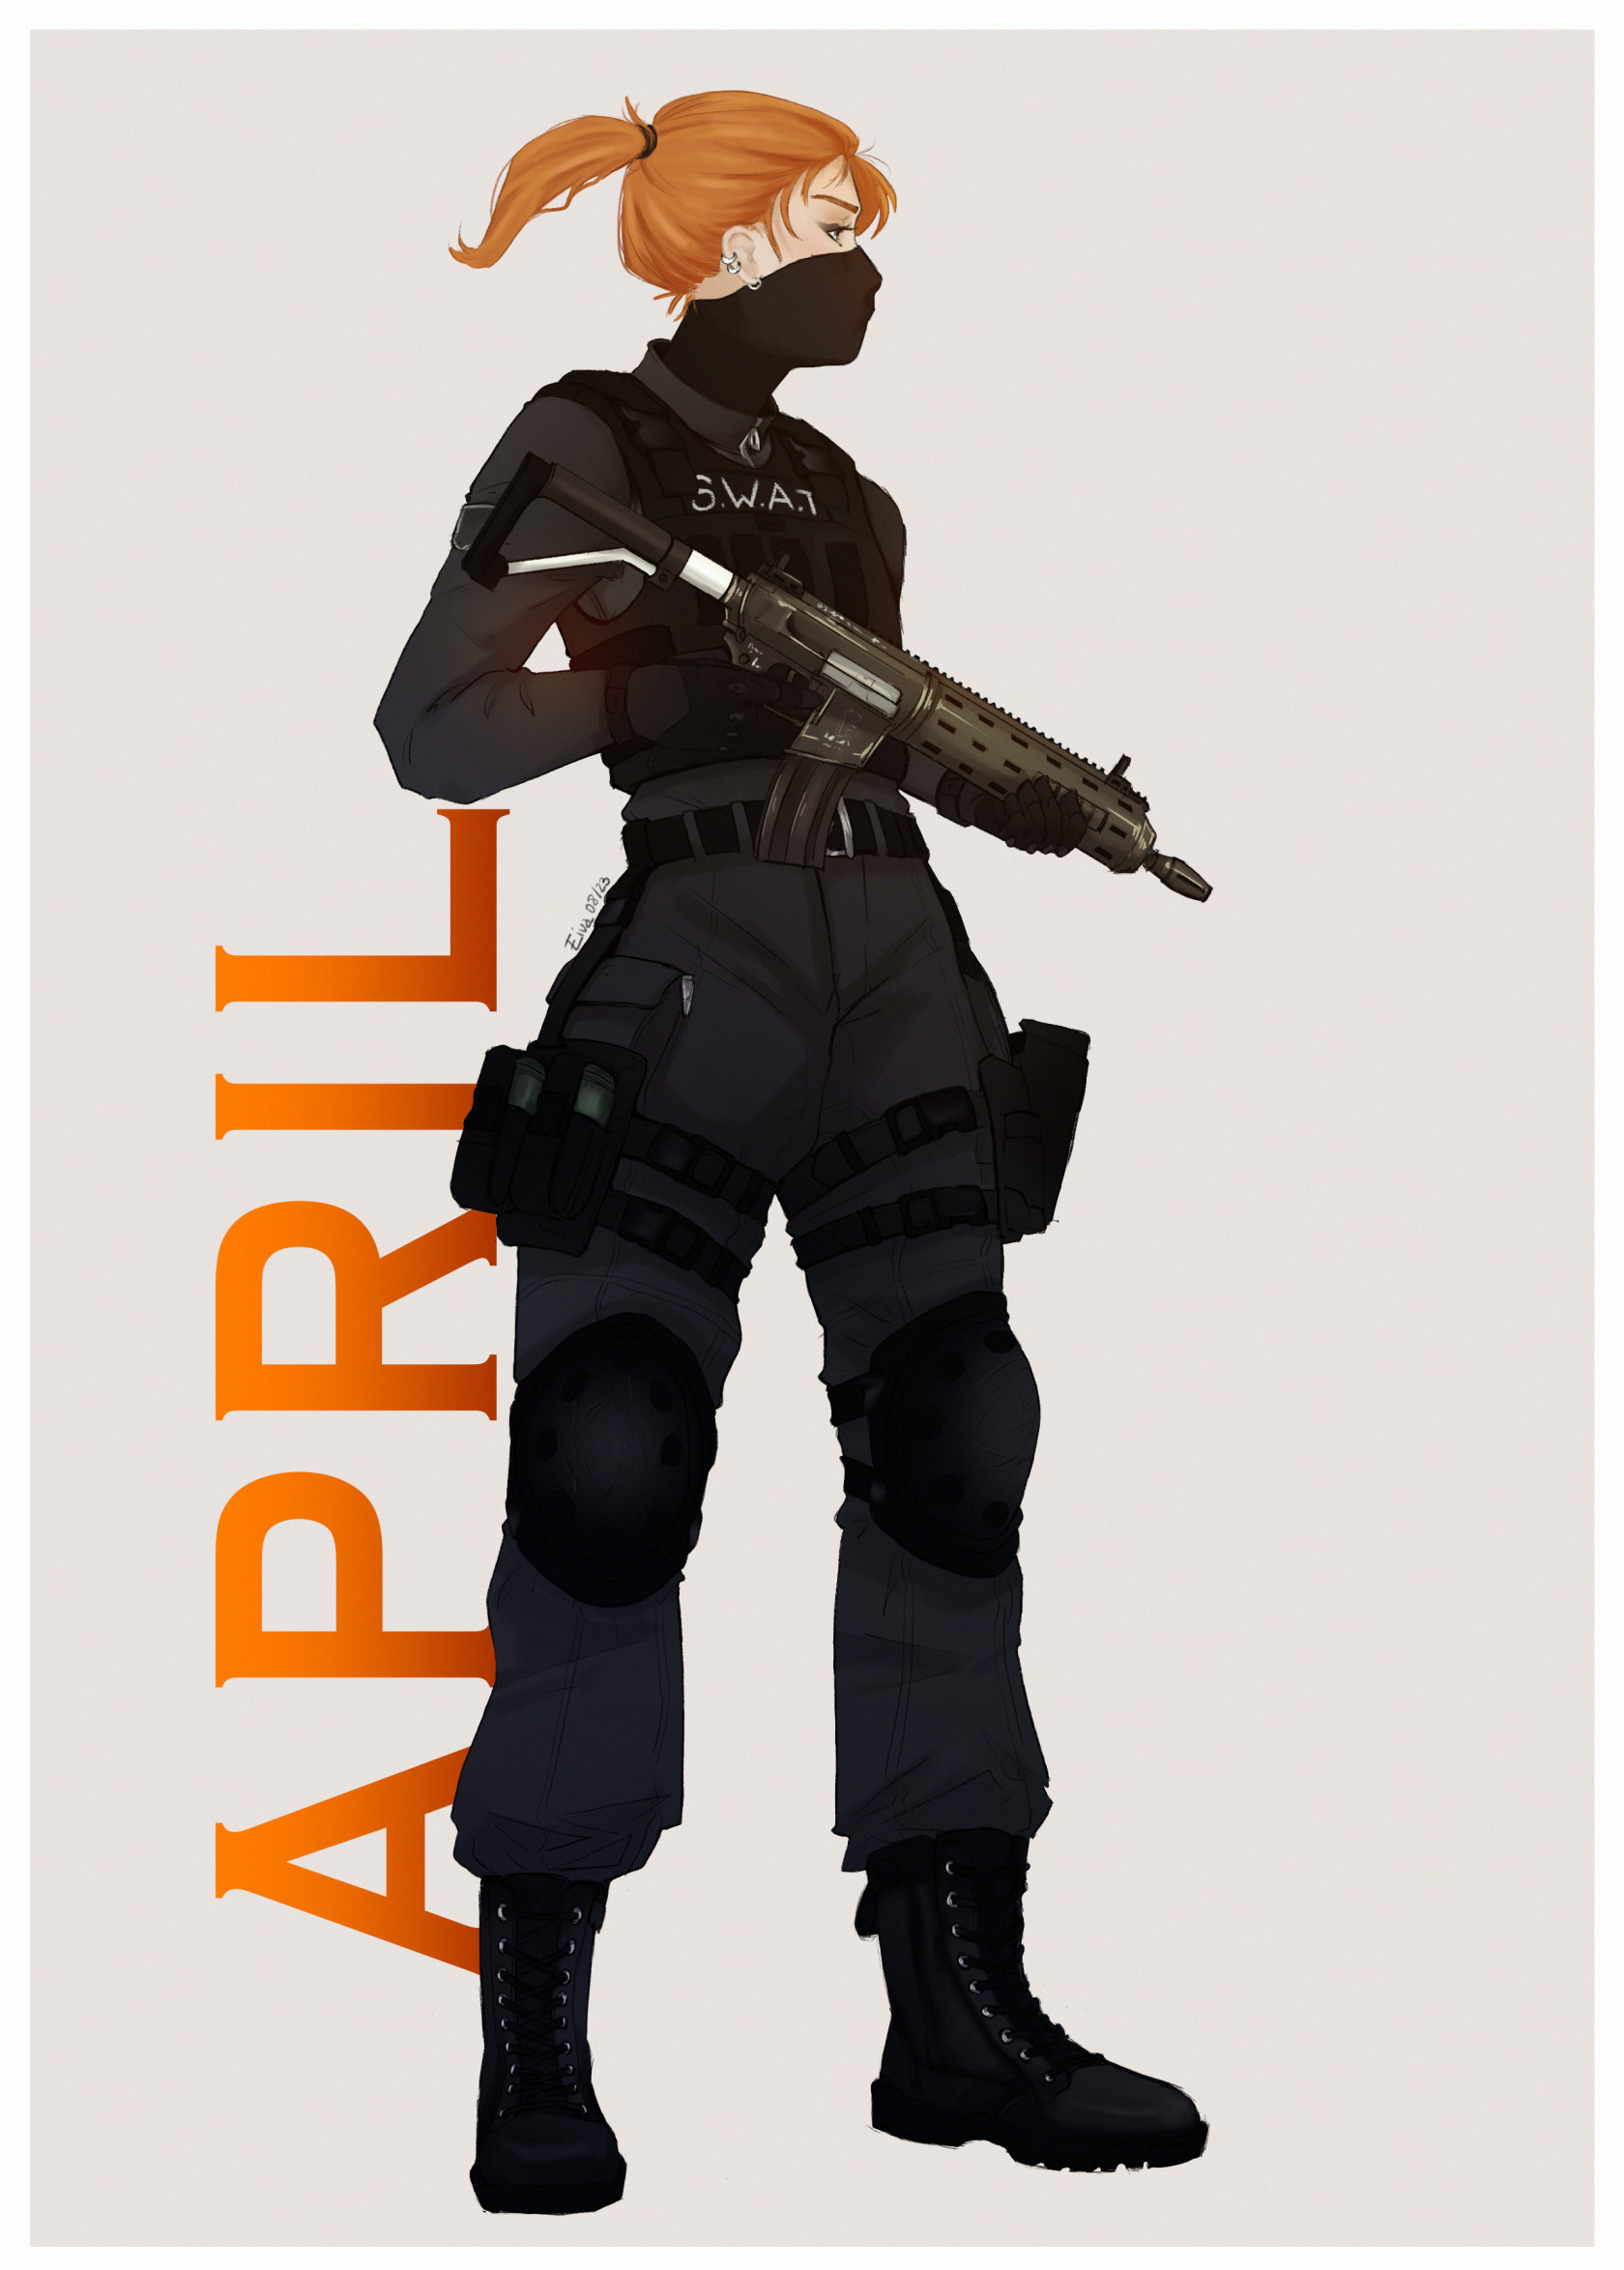 APRIL-SWAT.jpg